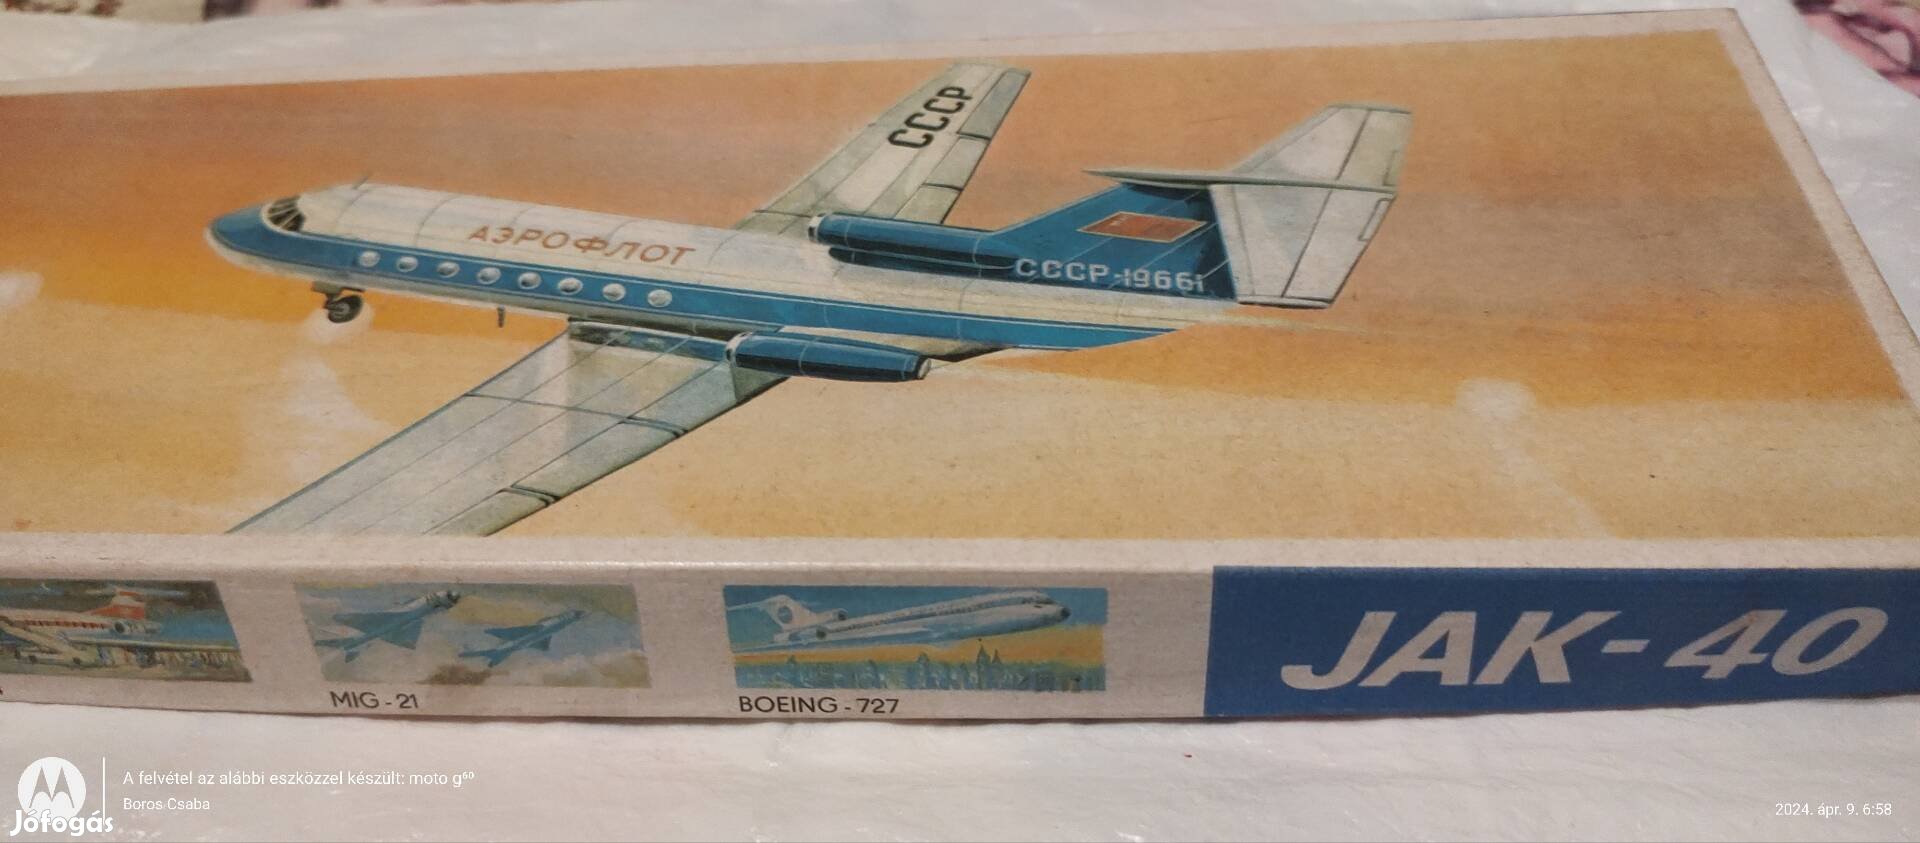 1984- es made ín DDR  JAK 40 modell repülőgép 